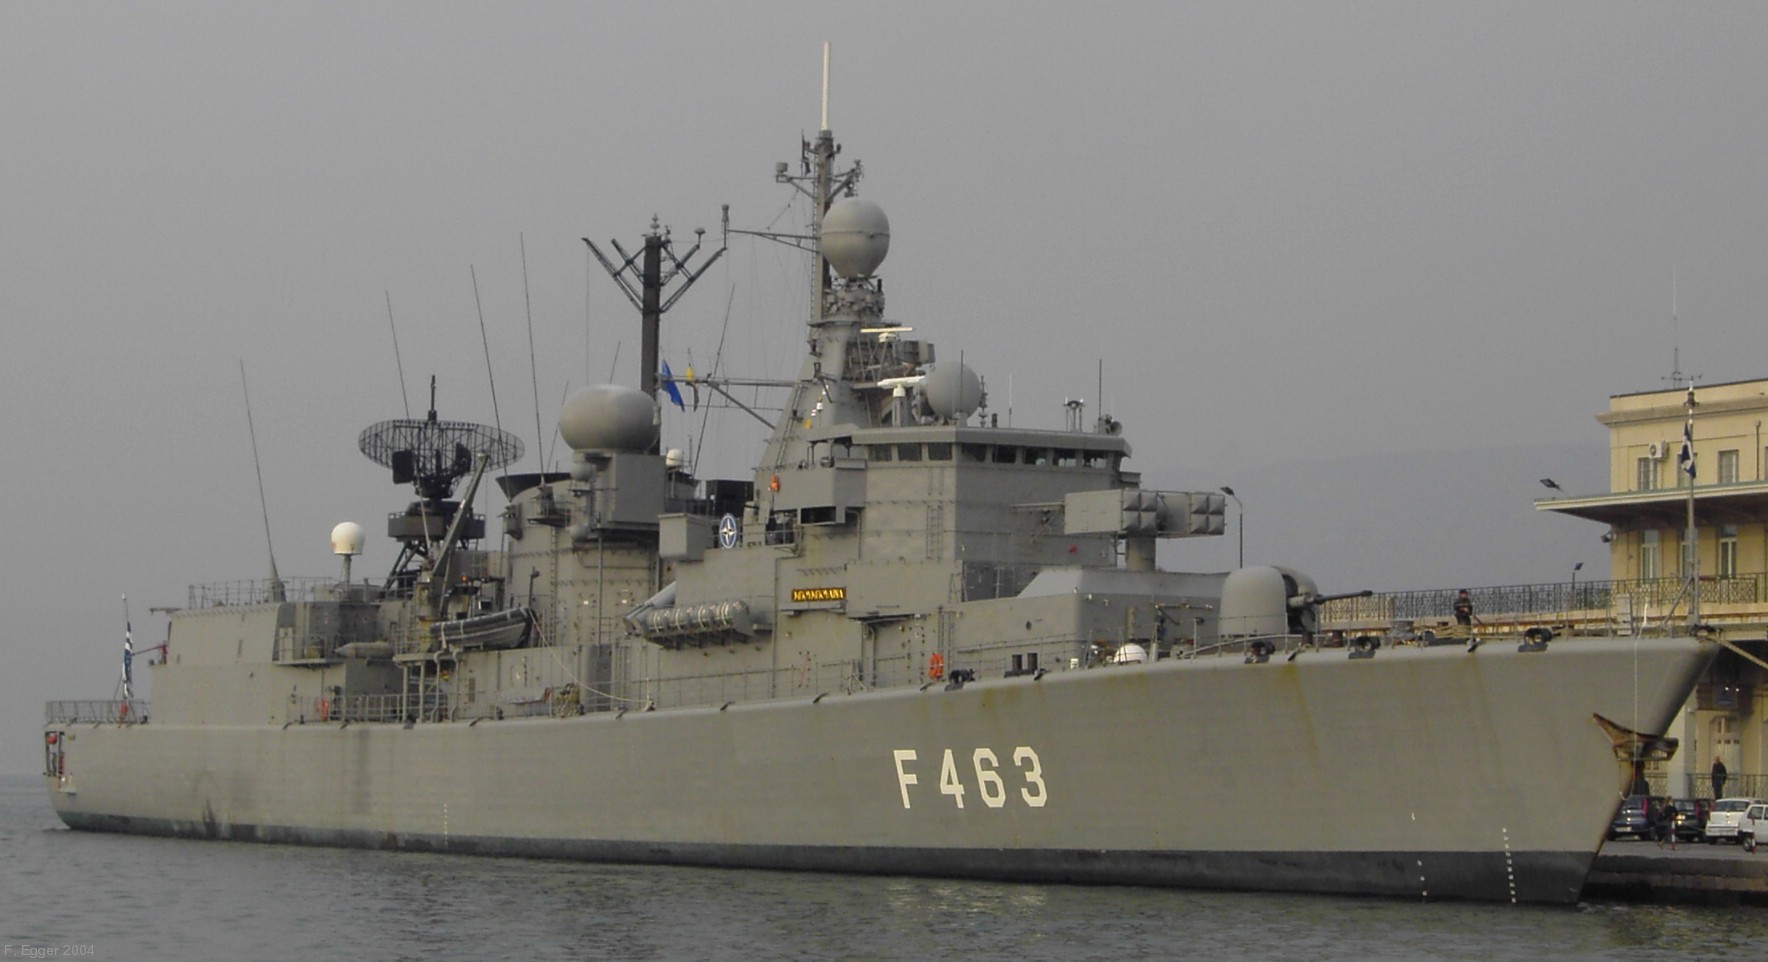 f 463 hs bouboulina elli kortenaer class frigate hellenic navy greece 04